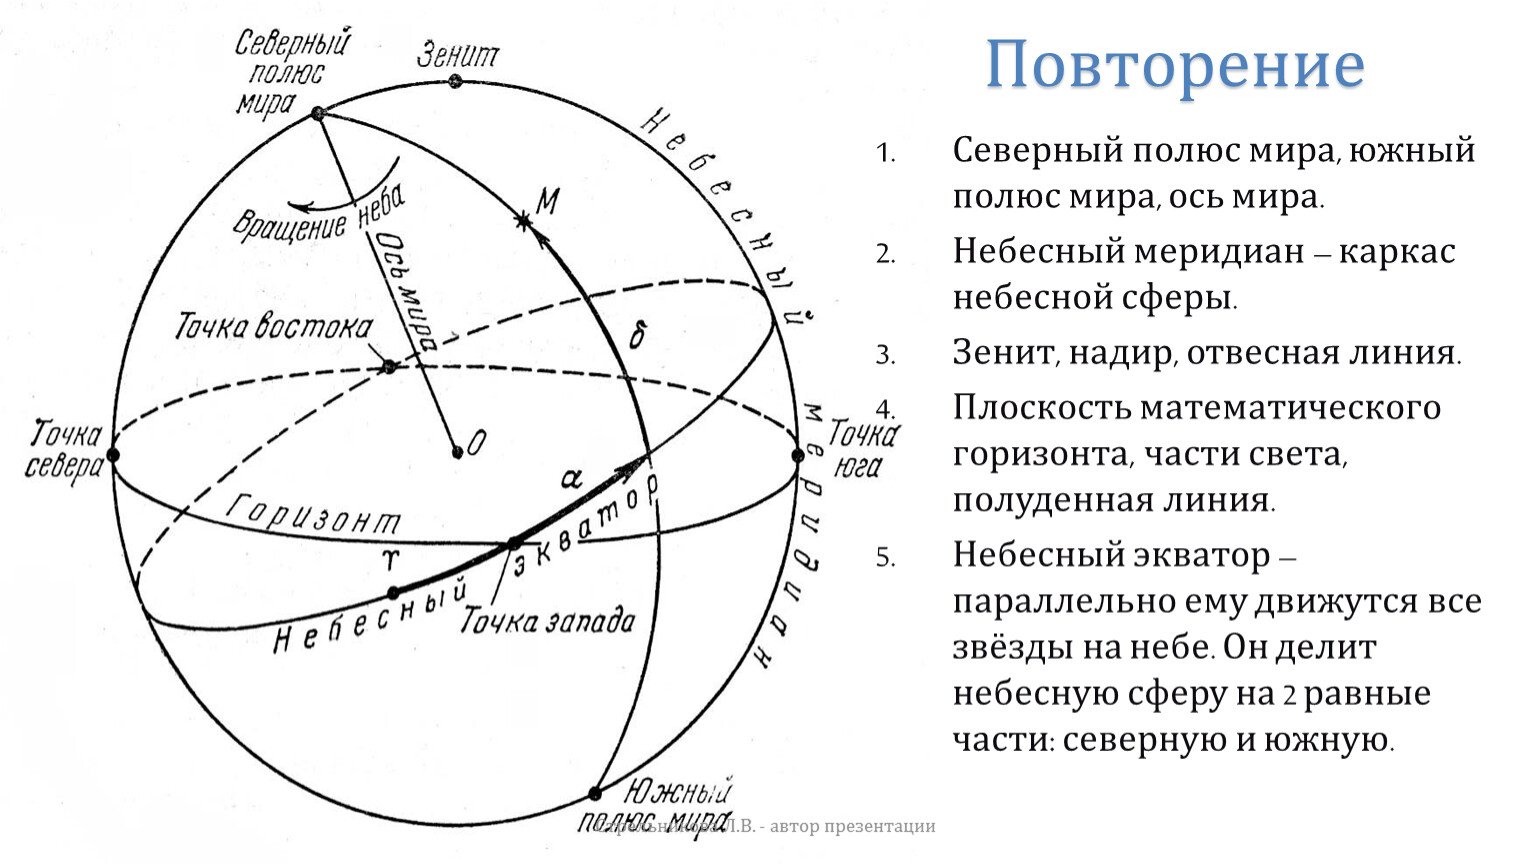 Зенит это астрономия. Небесная сфера Зенит Надир лсь мтре. Координаты небесной сферы астрономия.